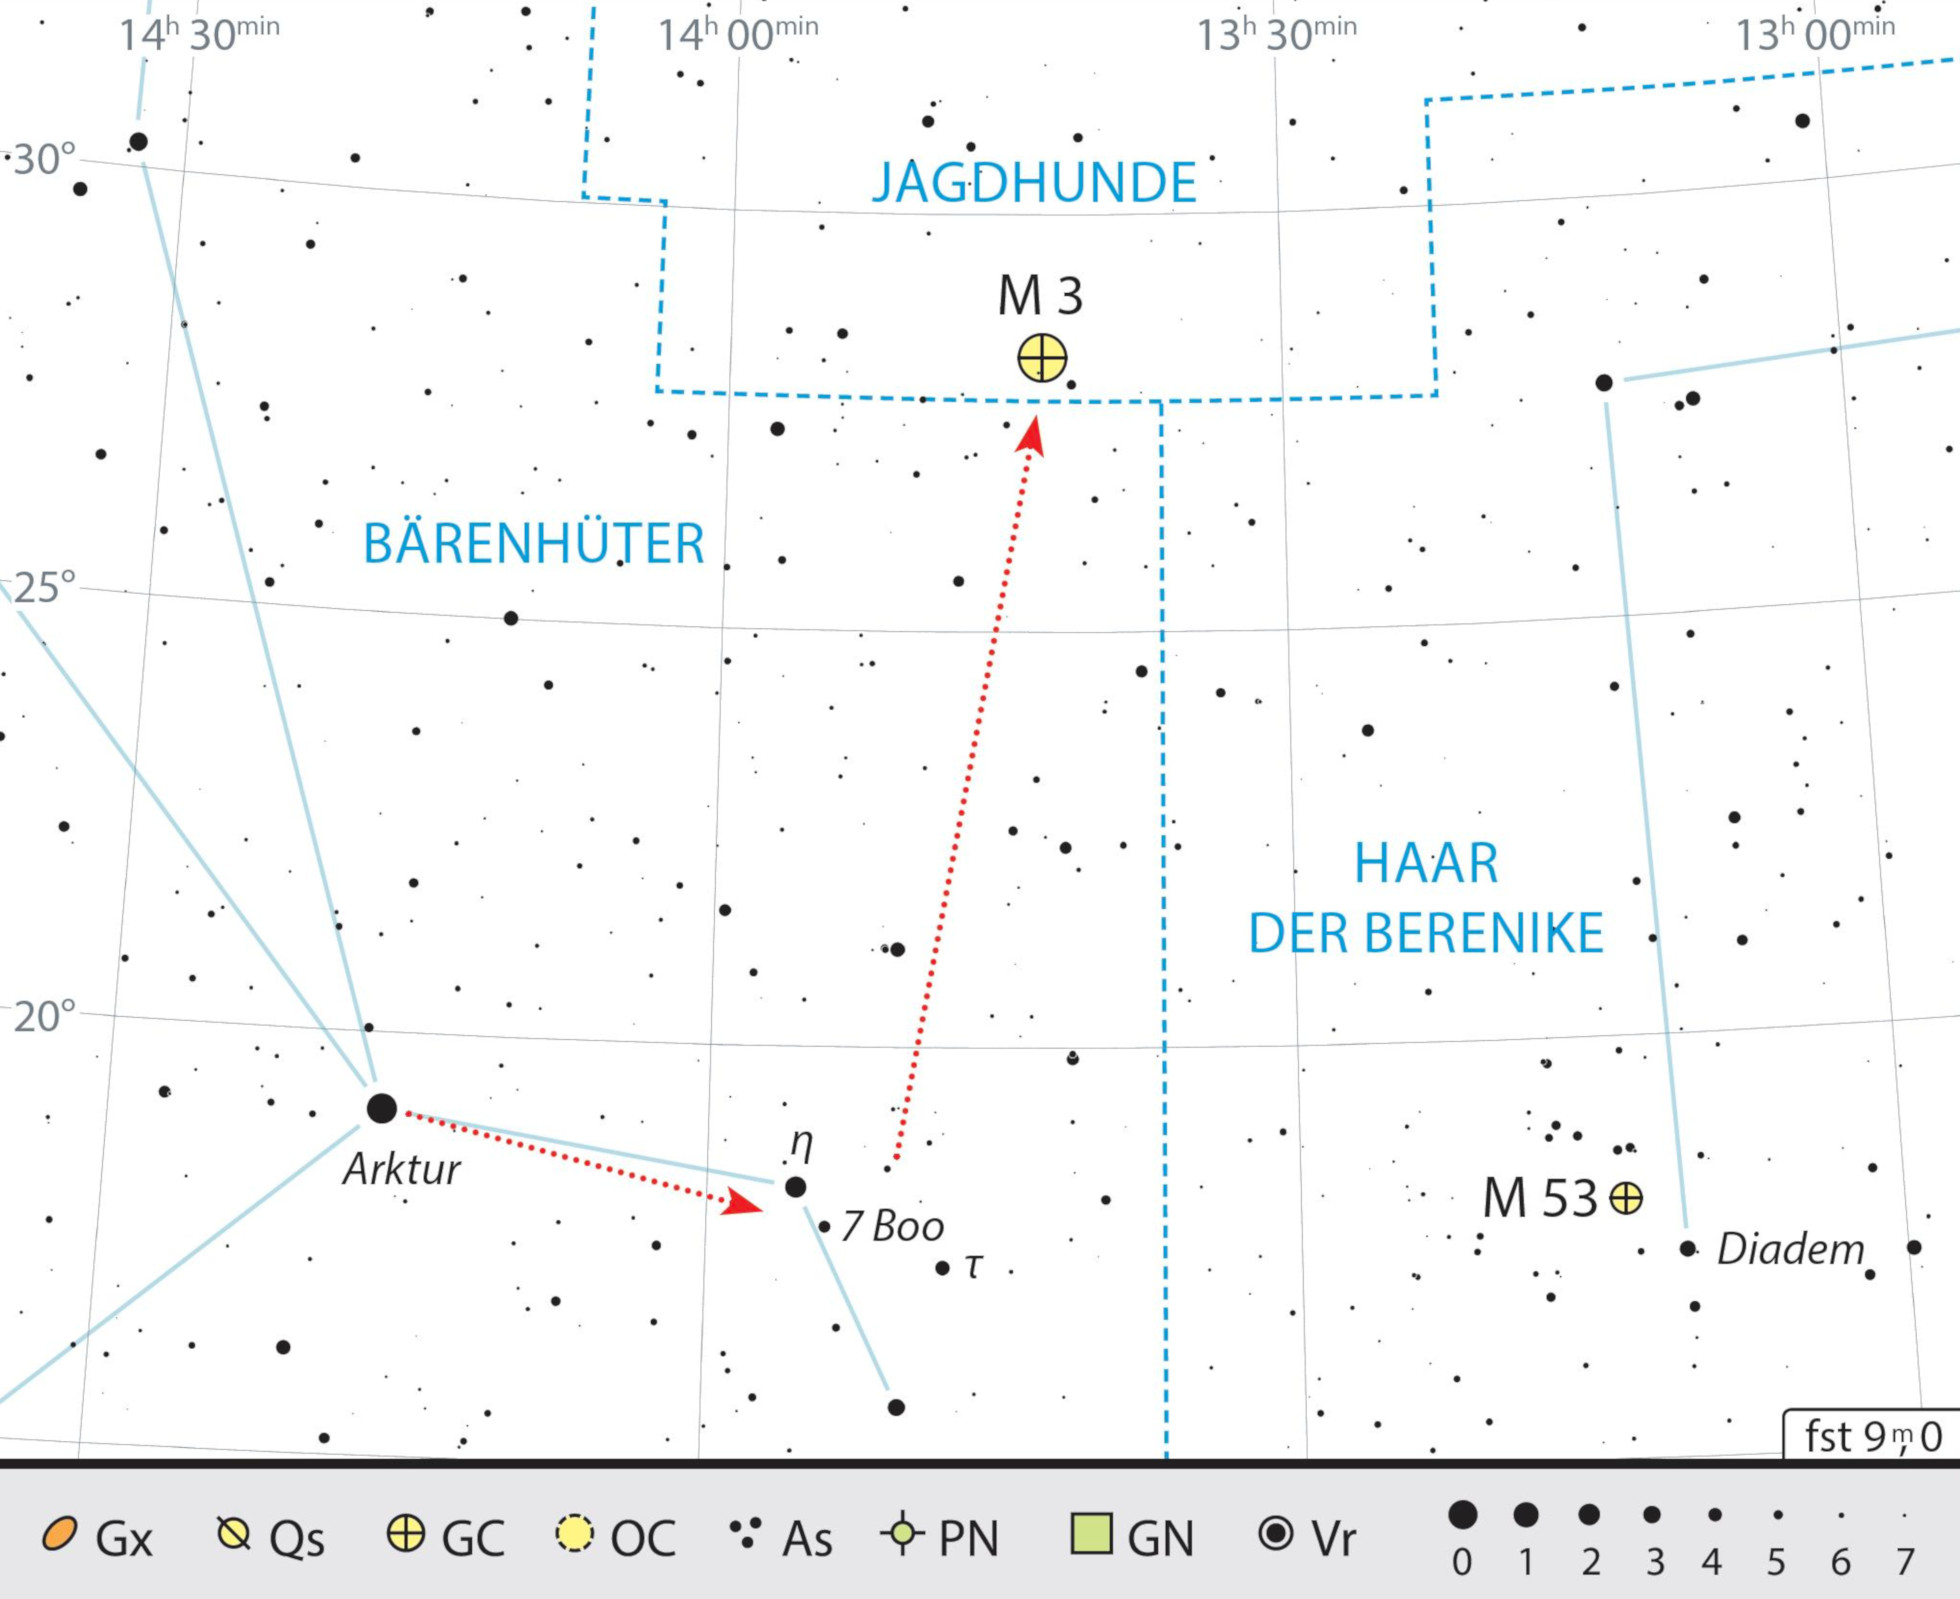 Mappa celeste per M3 nella costellazione dei Cani da Caccia. J. Scholte